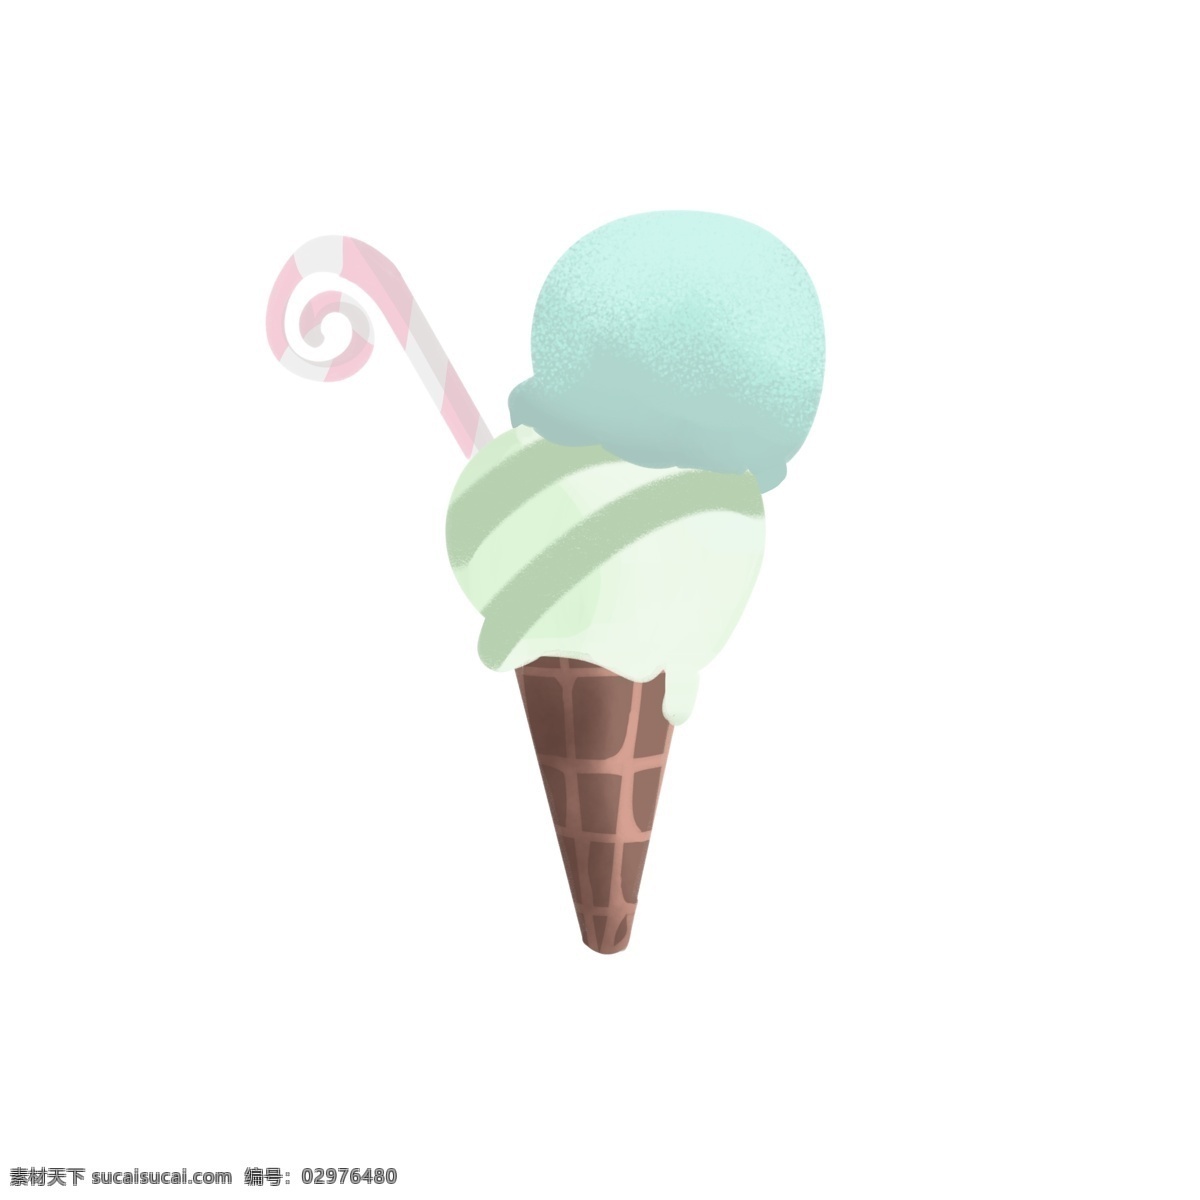 夏日冰激凌 甜品 卡通 简洁 可爱 美食 食品